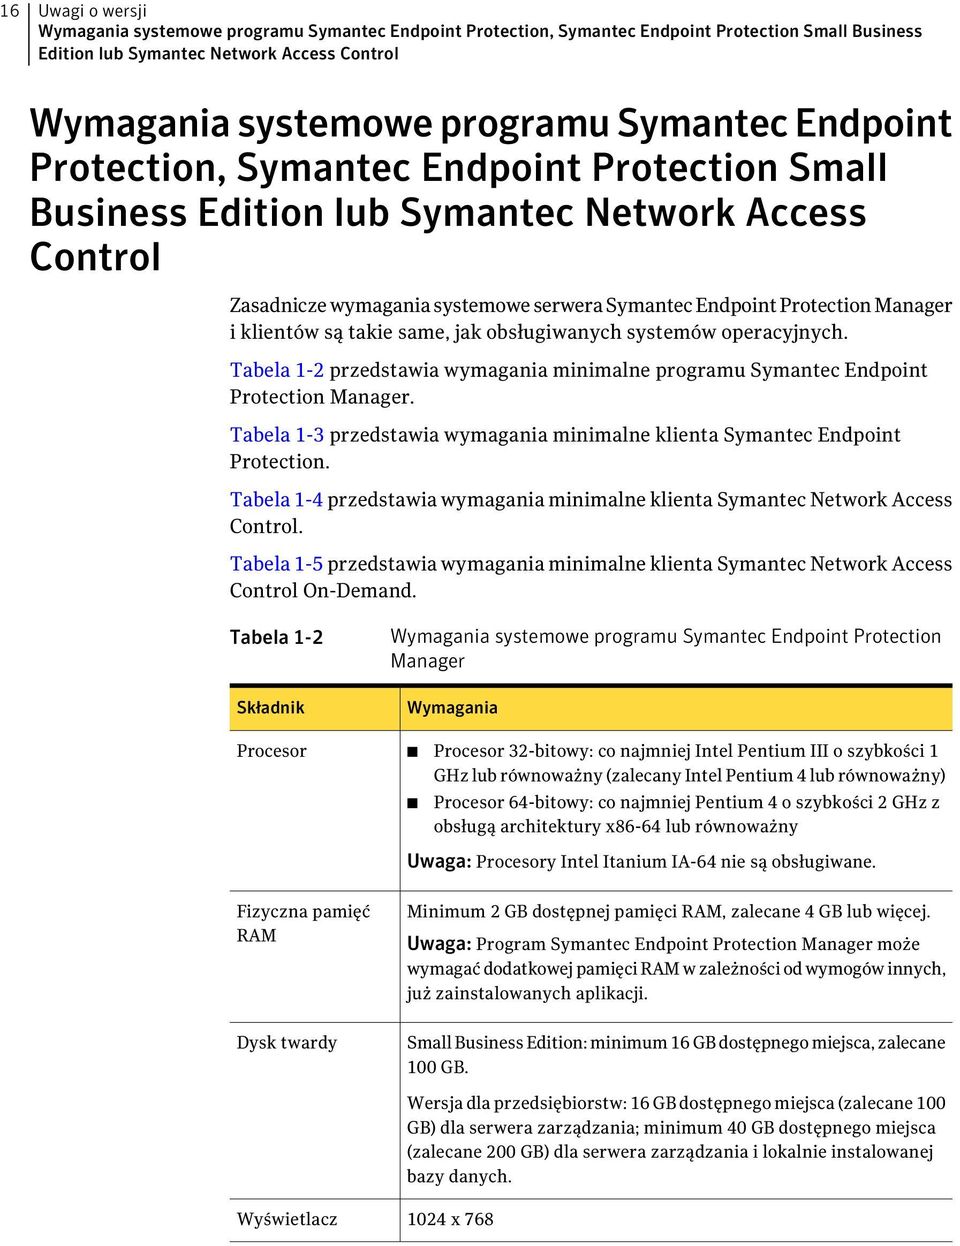 klientów są takie same, jak obsługiwanych systemów operacyjnych. Tabela 1-2 przedstawia wymagania minimalne programu Symantec Endpoint Protection Manager.